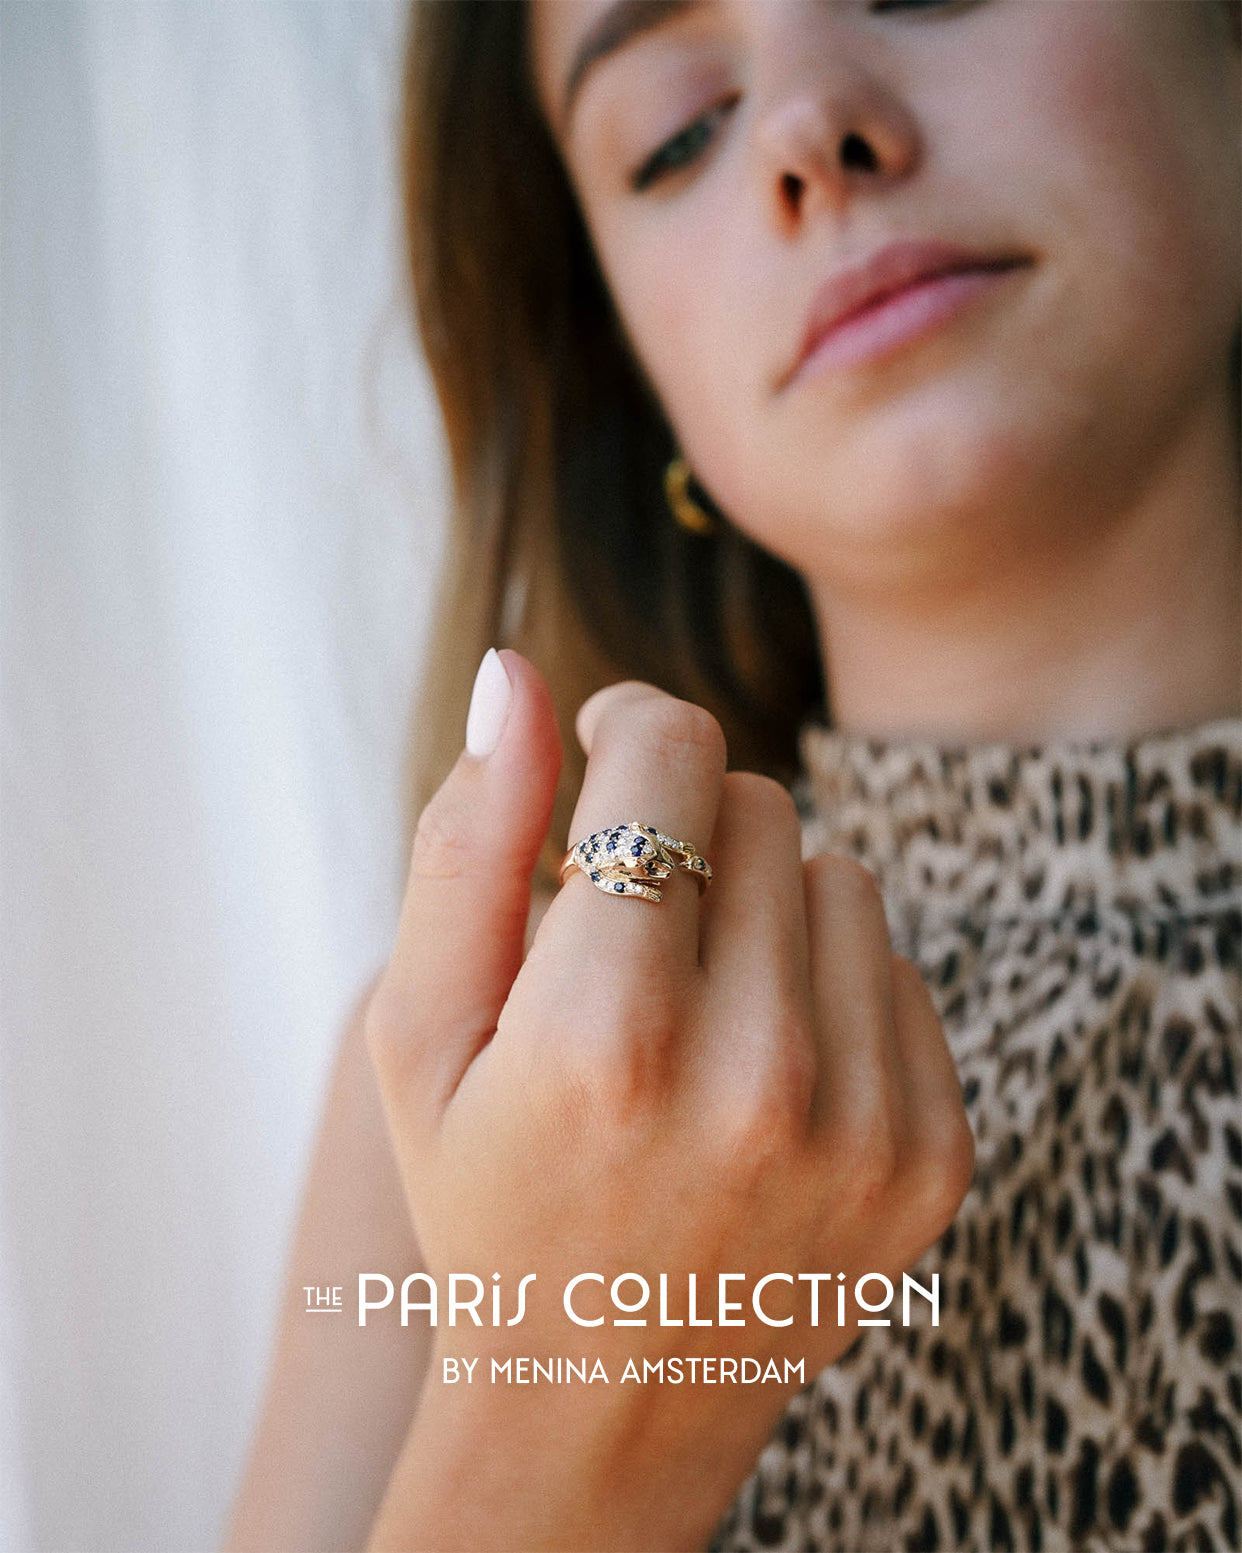 Menina Amsterdam geeft een vervolg aan het verhaal van vintage sieraden.